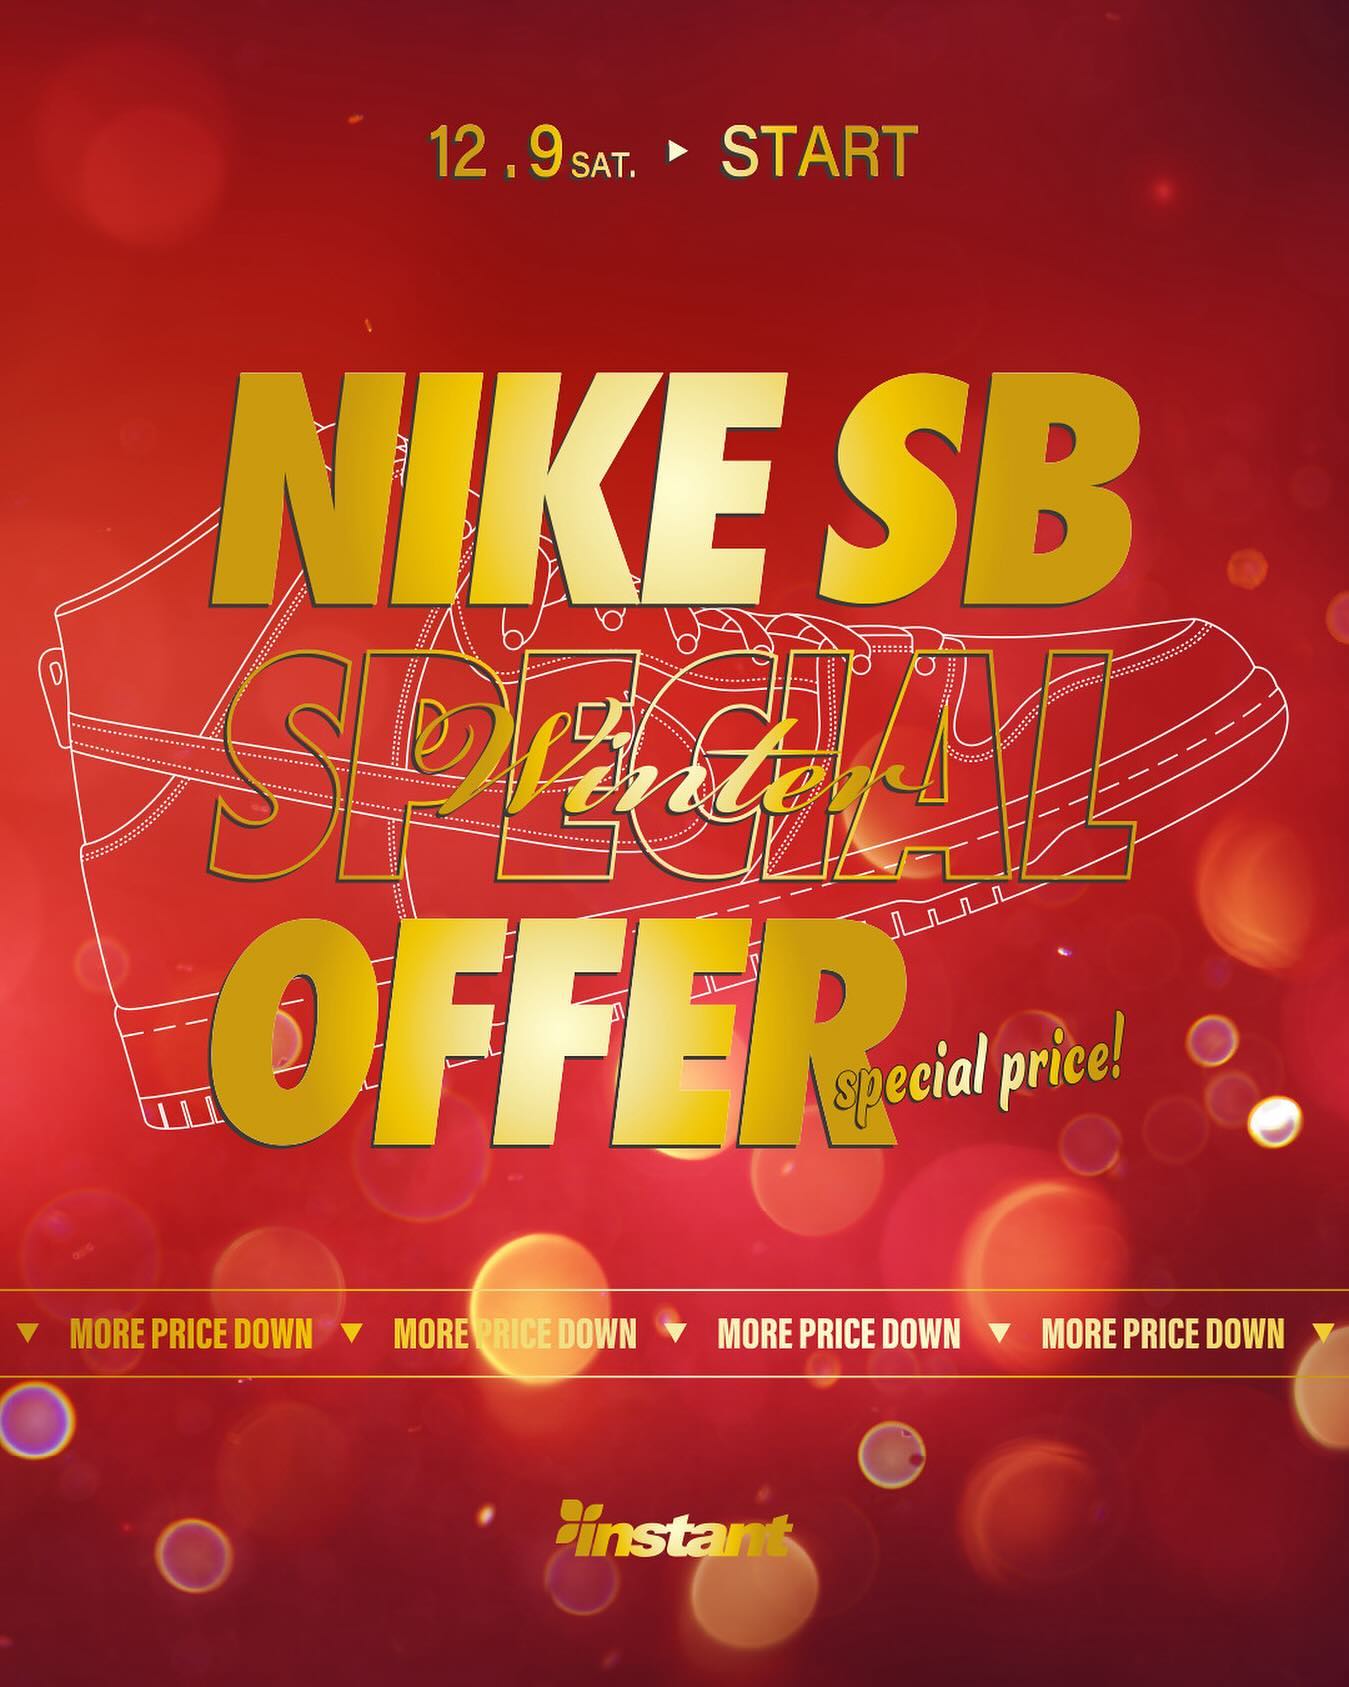 12/9(Sat) Start!!Nike SB "Winter" Special Offerを開催いたします。冬のNike SB Special Offerがスタート！対象モデル拡大、OFF率UPで更にリフレッシュいたします。ガンガンにスケートシューズを履き潰すスケーターの皆さんはもちろん、この冬スケートボードを始める初心者の方々にも、是非ともこの機会を逃さずに、初めてのスケートシューズを手に入れて下さい。マイサイズはお早めに︎Instant全店舗およびWebストアで、皆さまのご来店をお待ちしております！#nikesbspecialoffer#instantskateshop